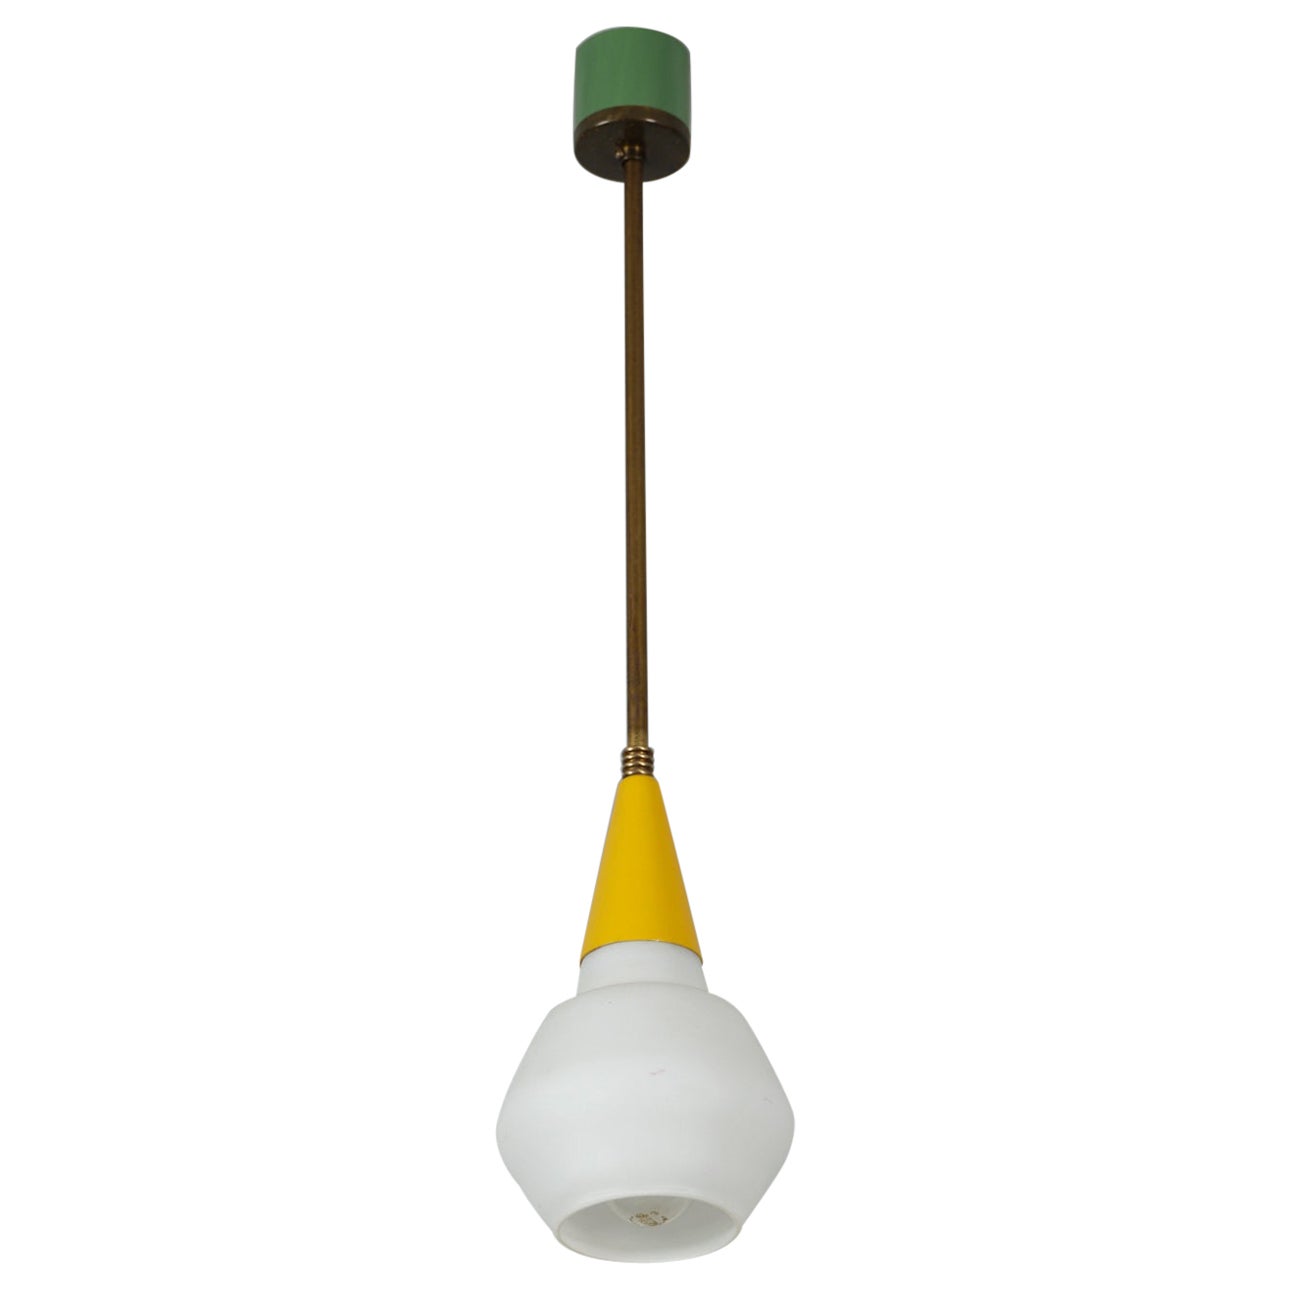 Italian Midcentury Brass Ceiling Pendant Light - Vintage 1950s Modern Design